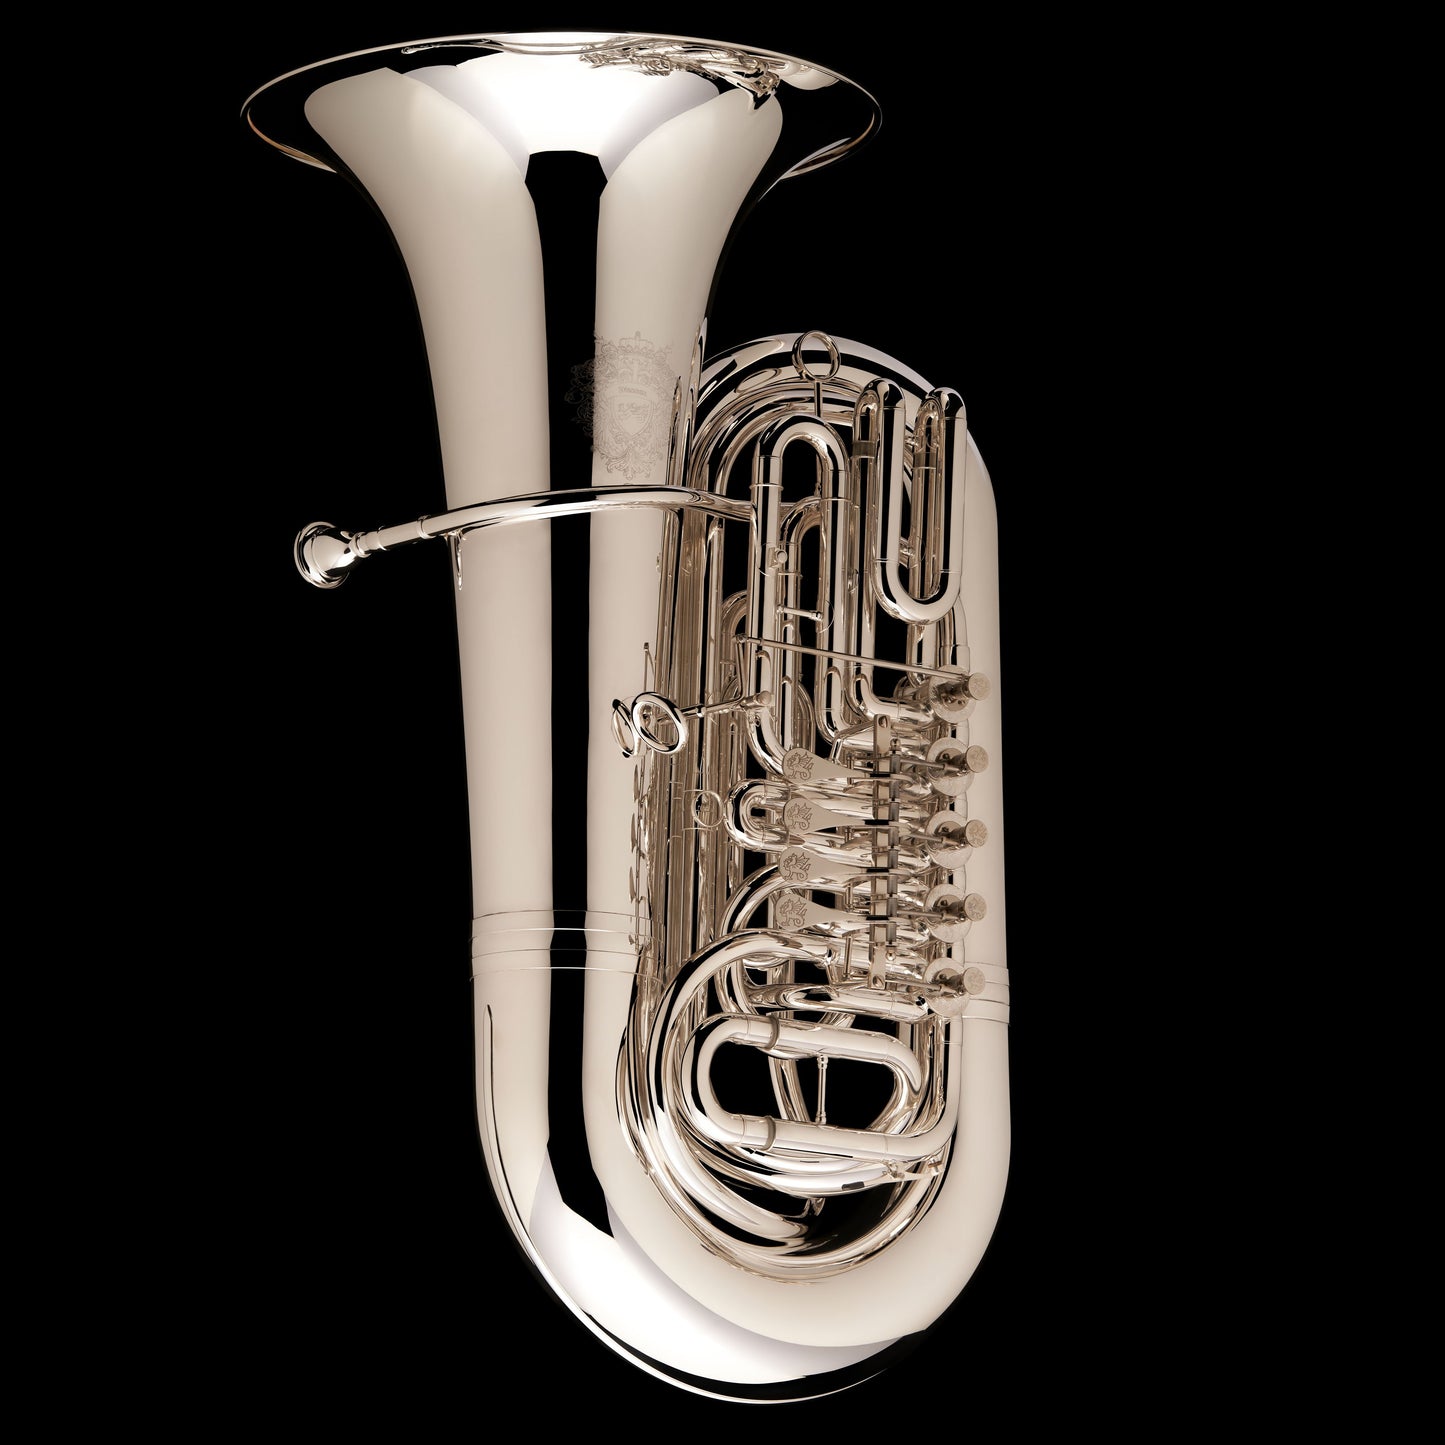 Tuba 'Luzern' de 5 válvulas rotativas en Sib 5/4 - TB575